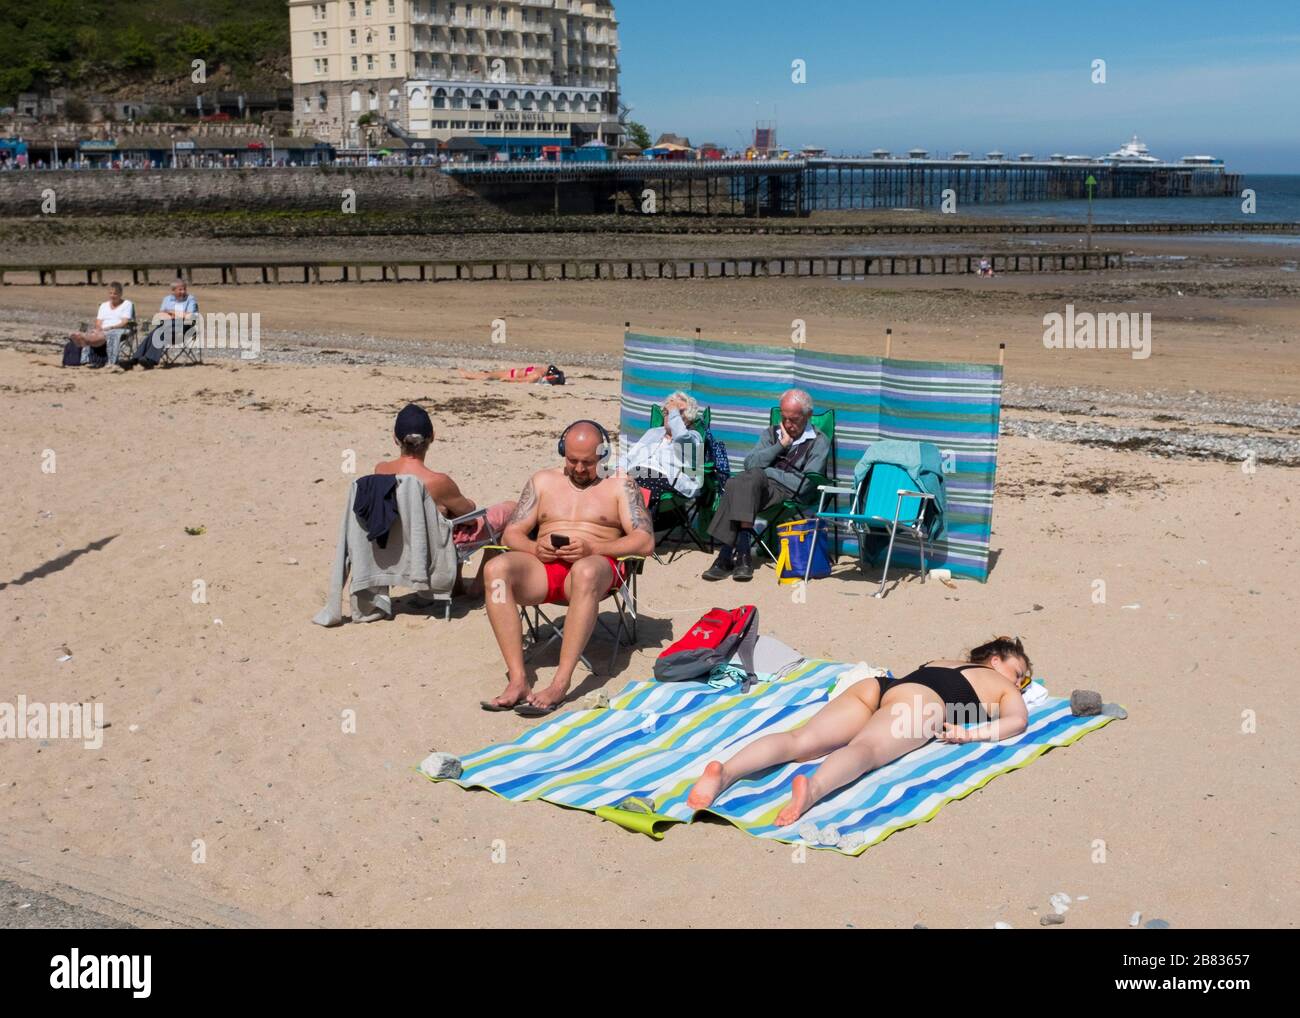 Les gens se bronzer sur la plage à Llandudno, pays de Galles, Royaume-Uni. Banque D'Images